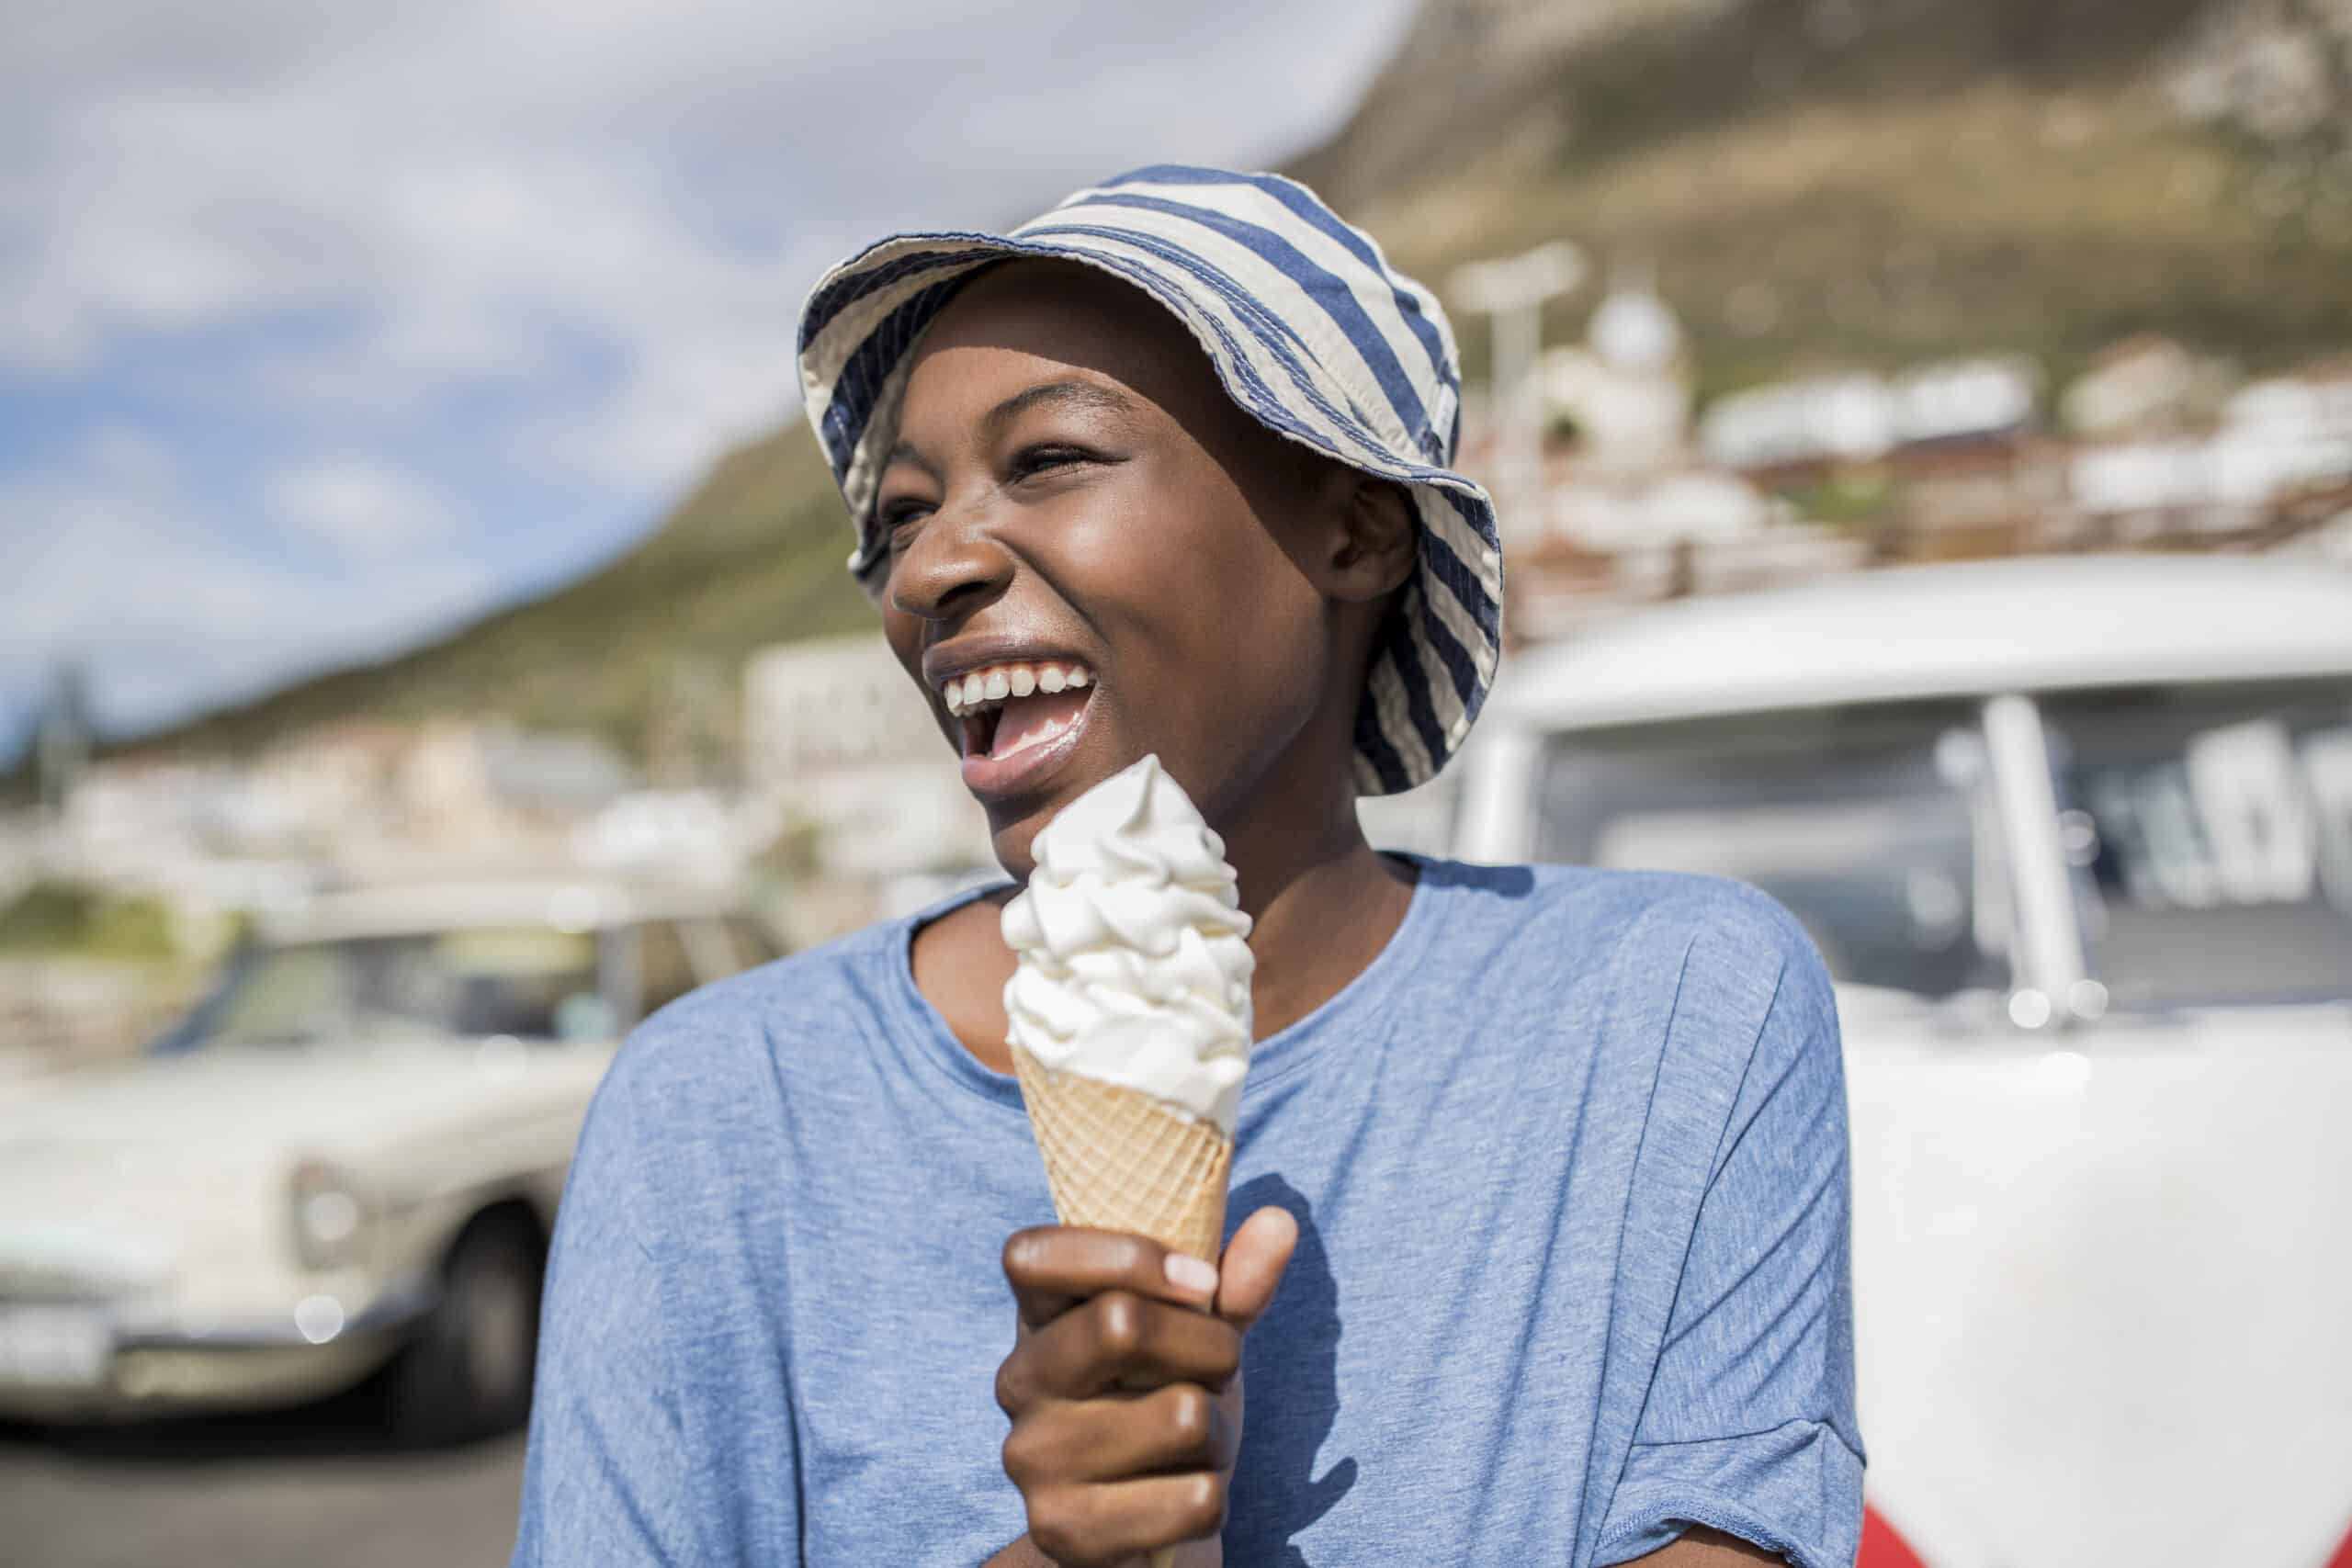 Eine fröhliche Frau mit gestreiftem Hut genießt an einem sonnigen Tag eine Eistüte, im Hintergrund sind Oldtimer und ein Berg zu sehen. © Fotografie Tomas Rodriguez